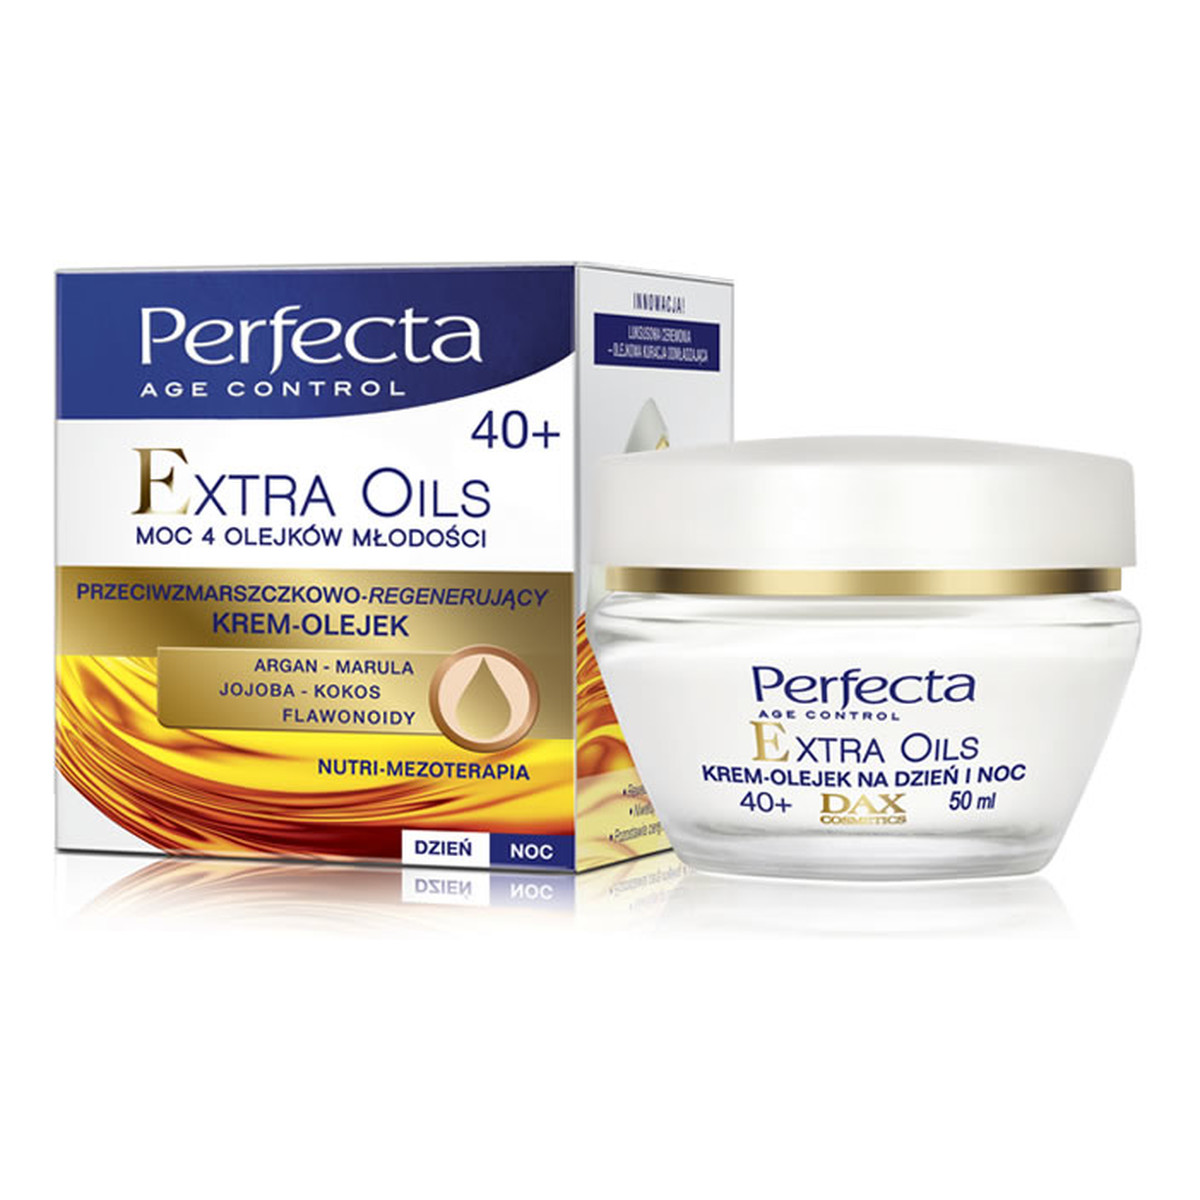 Perfecta Age Control Extra Oils 40+ Krem-Olejek Przeciwzmarszczkowo-Regenerujący Na Dzień i Na Noc 50ml